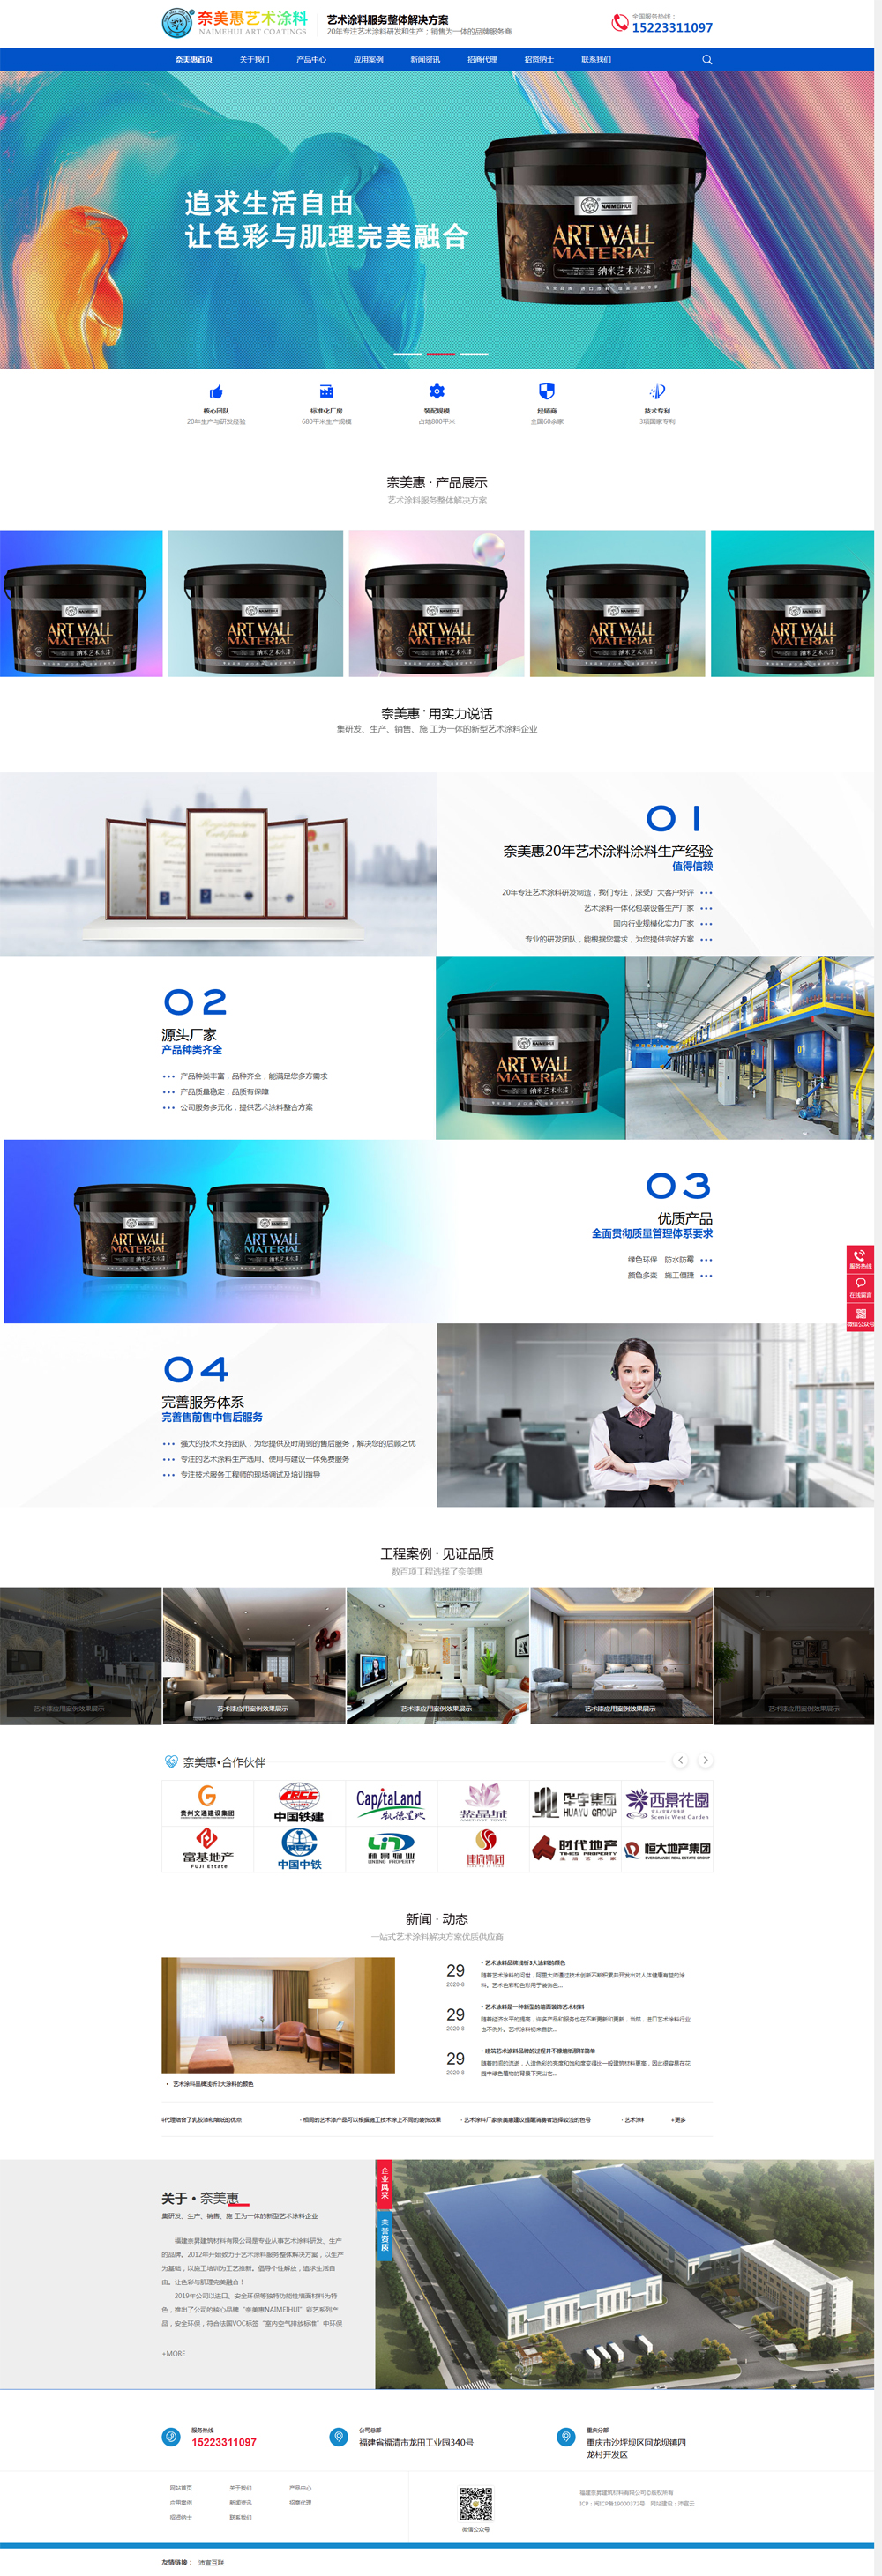 浙江艺术涂料品牌营销型网站正式上线